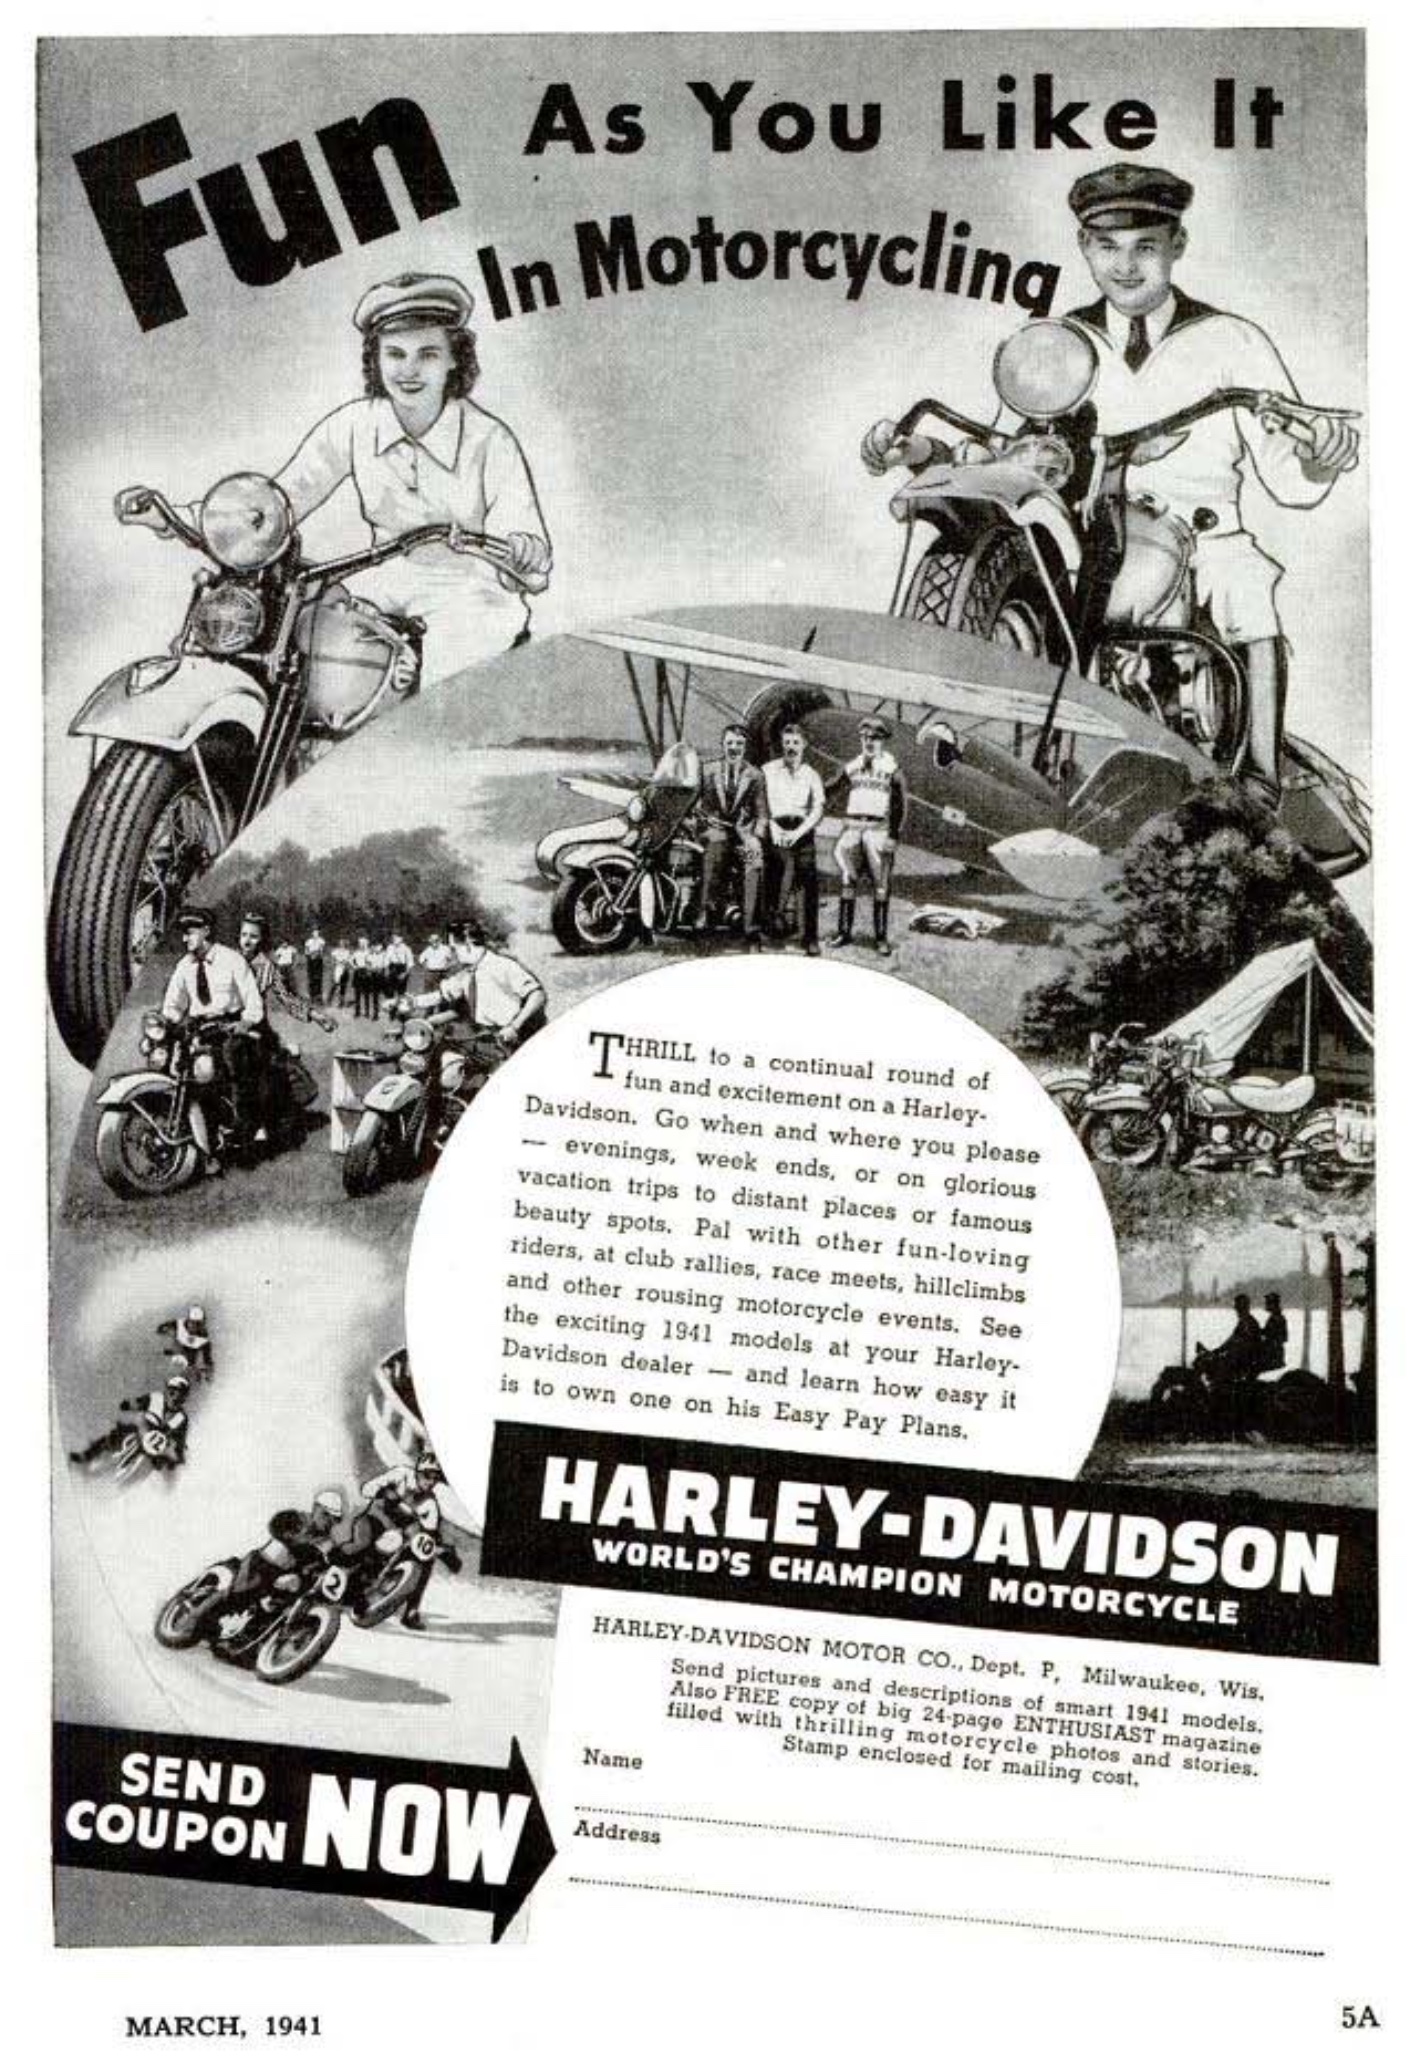 1941 - Harley-Davidson anuncio